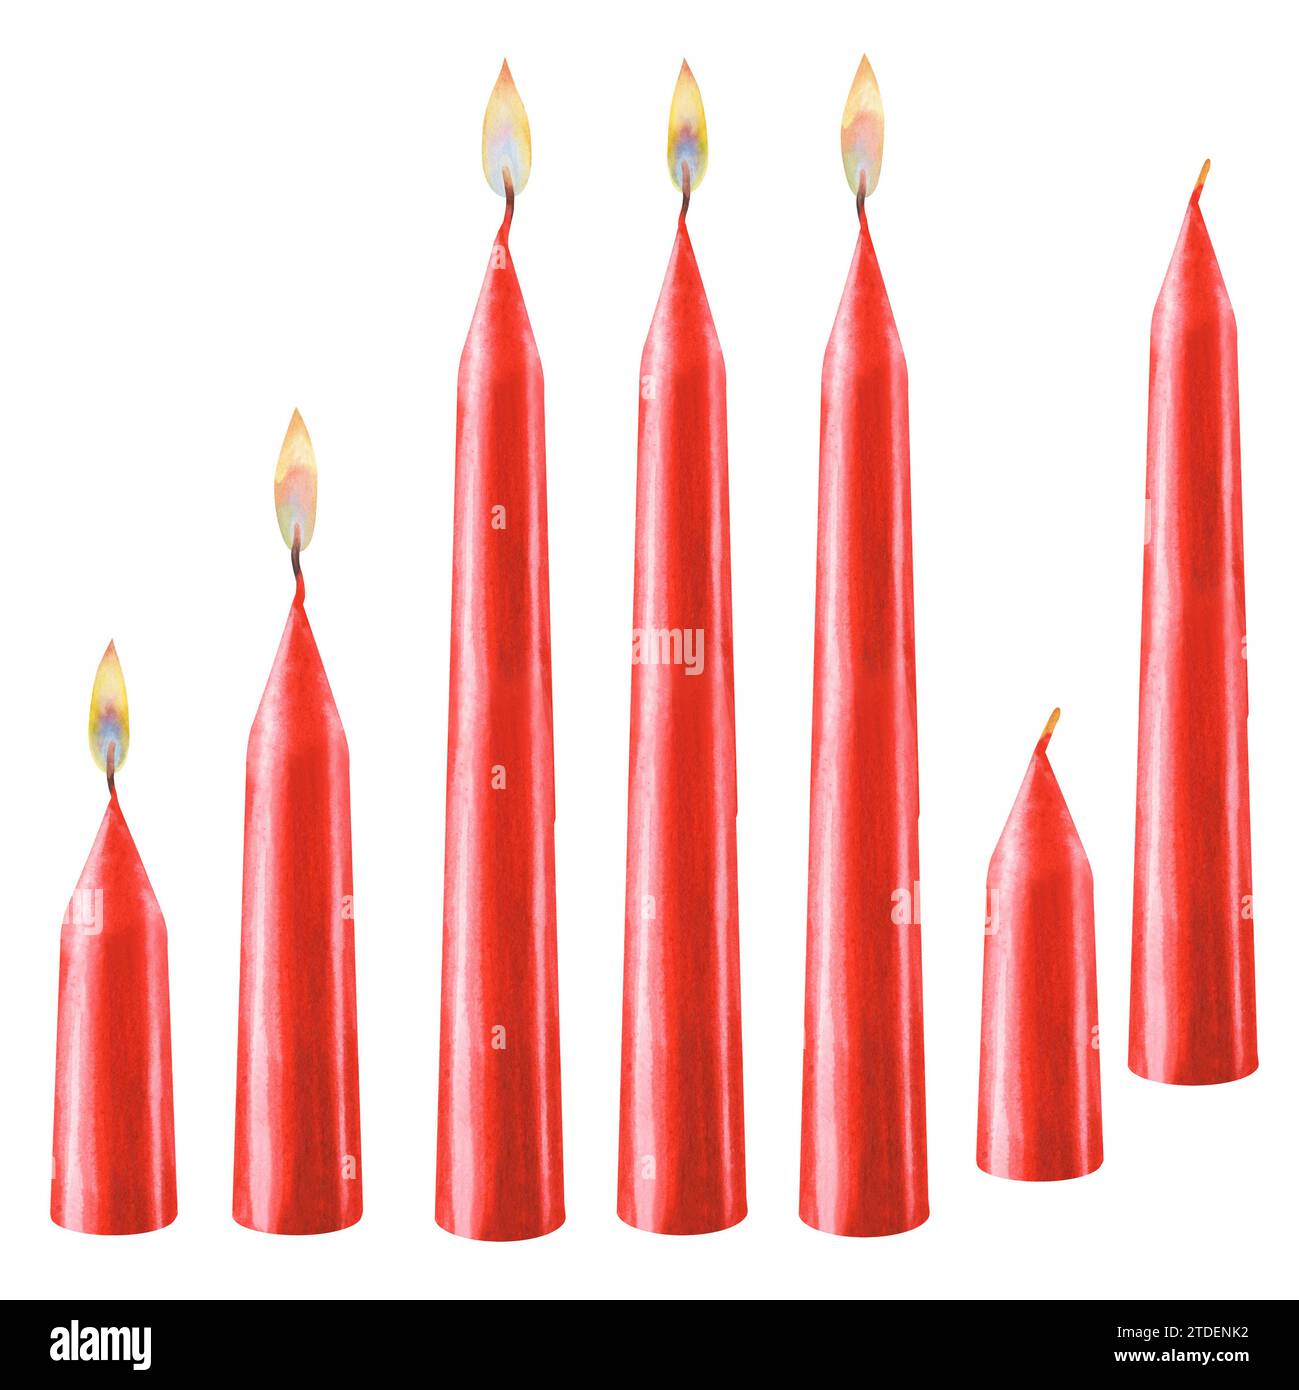 Aquarellrote vertikale kurze und lange Kerzen mit Flammen verschiedener Art und ohne Flammen für Weihnachten, Candlemas, Hochzeit, Geburtstag, Ostern, Stockfoto